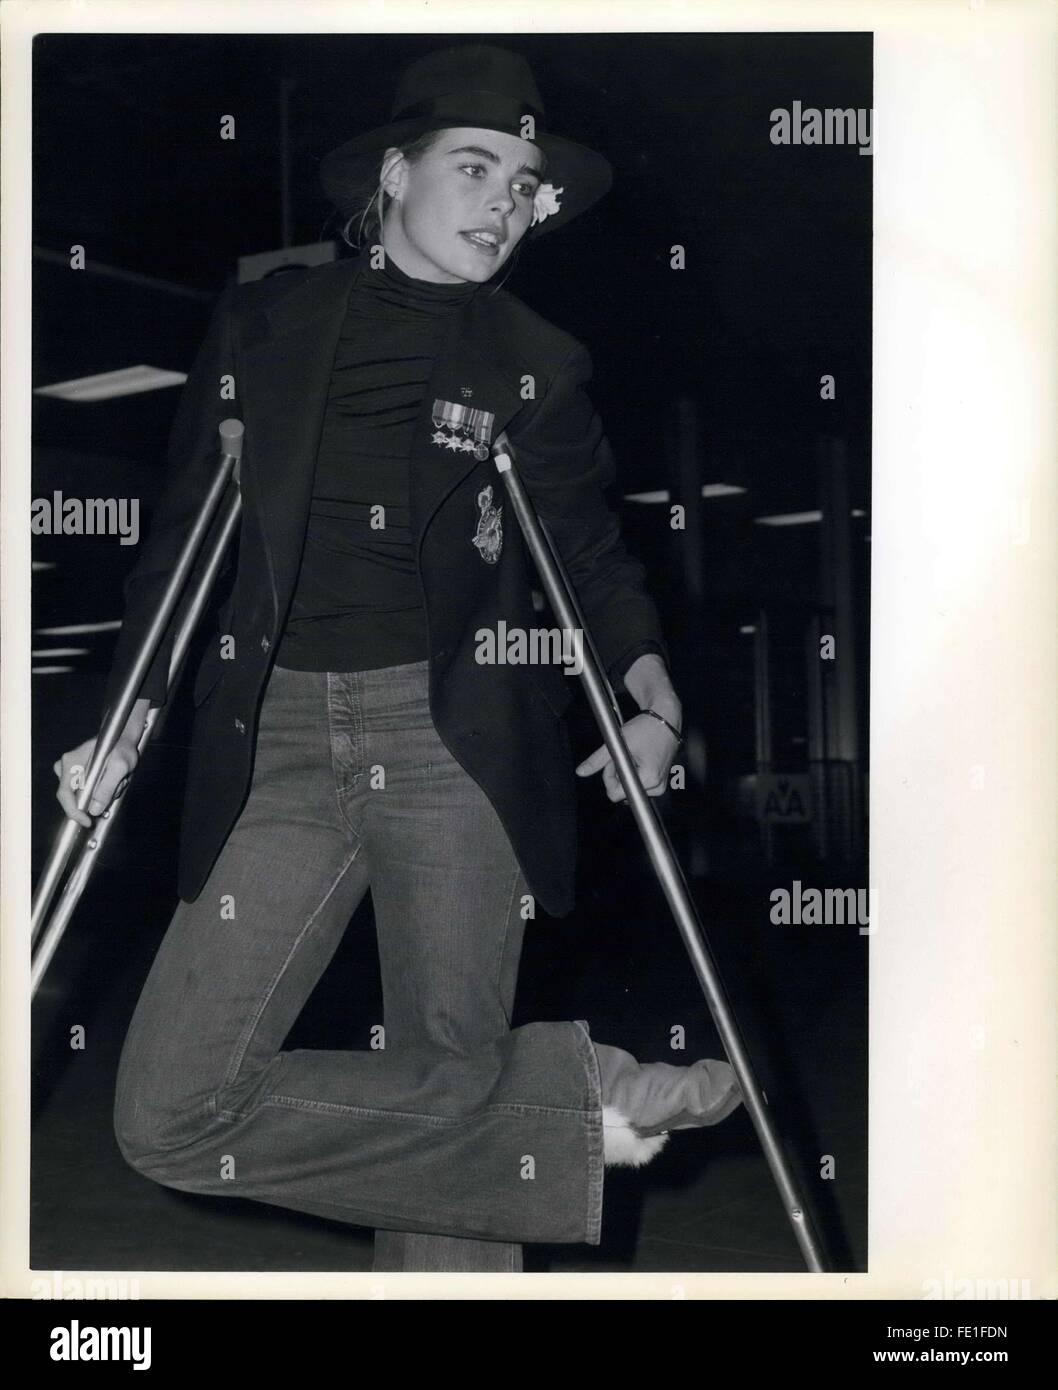 1985 - Margaux Hemingway on crutches © Keystone Pictures USA/ZUMAPRESS.com/Alamy Live News Stock Photo